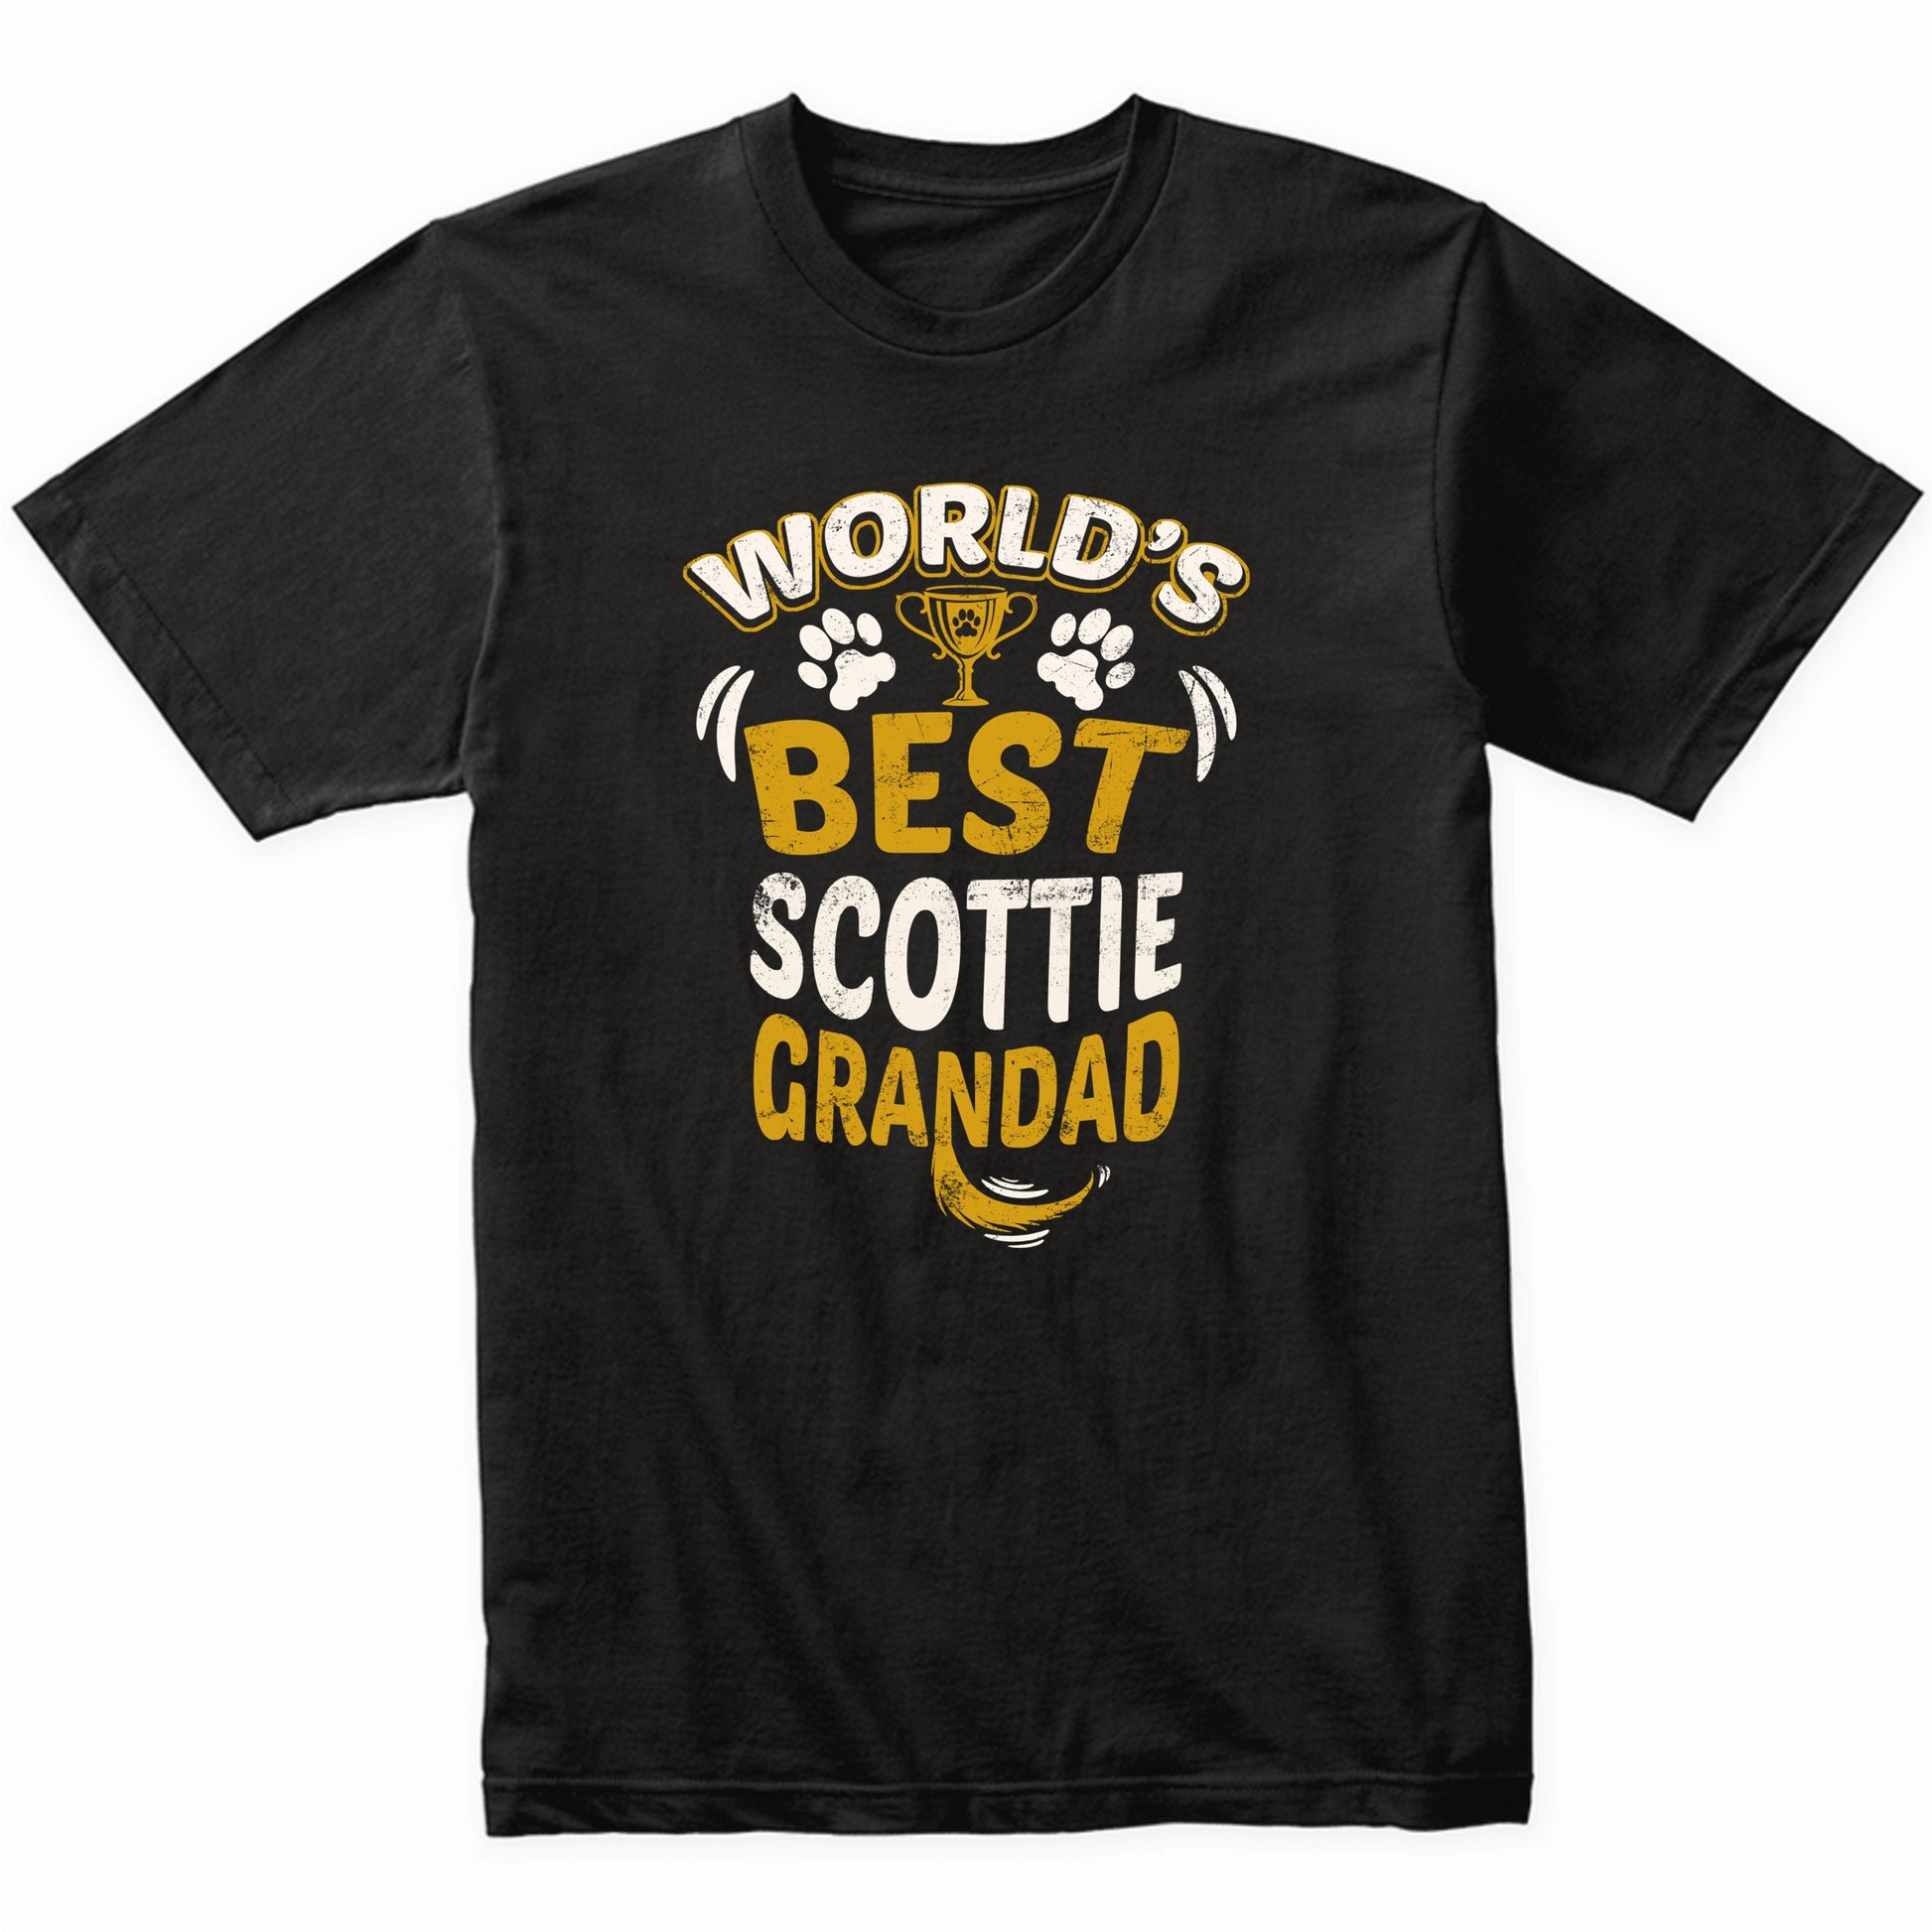 World's Best Scottie Grandad Graphic T-Shirt